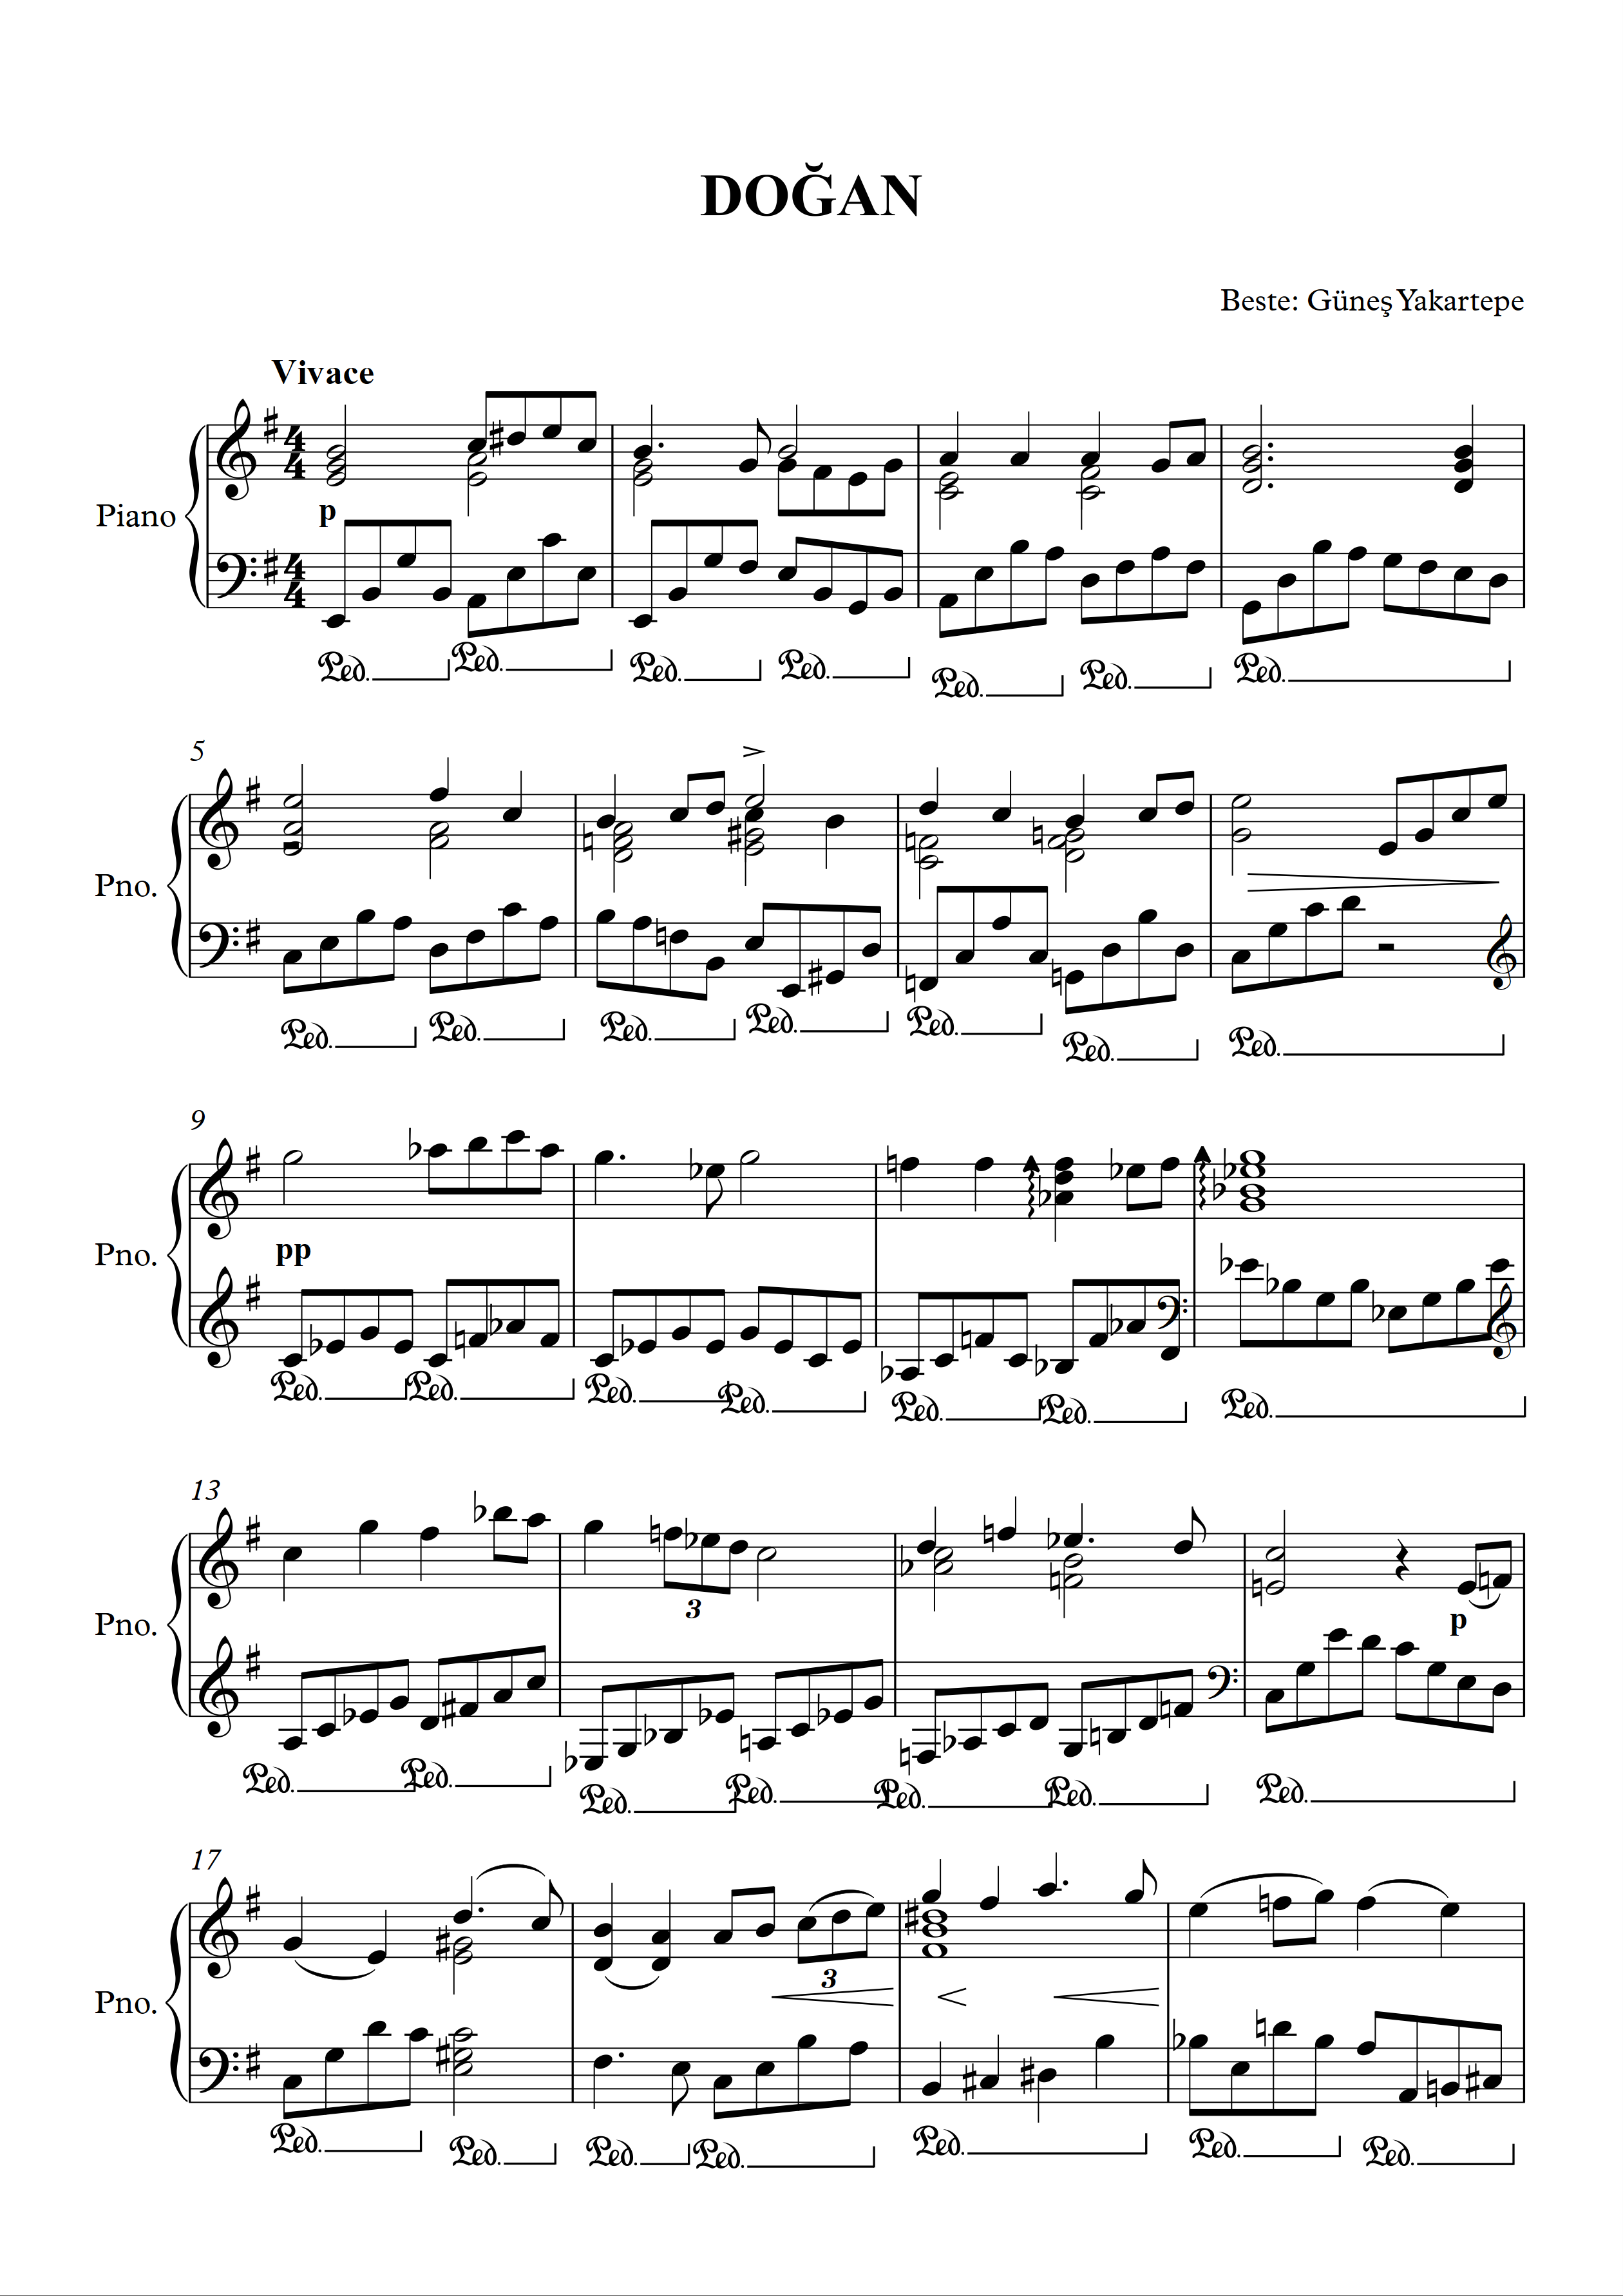 Doğan Piyano Notaları Sayfa 1 Beste Güneş Yakartepe